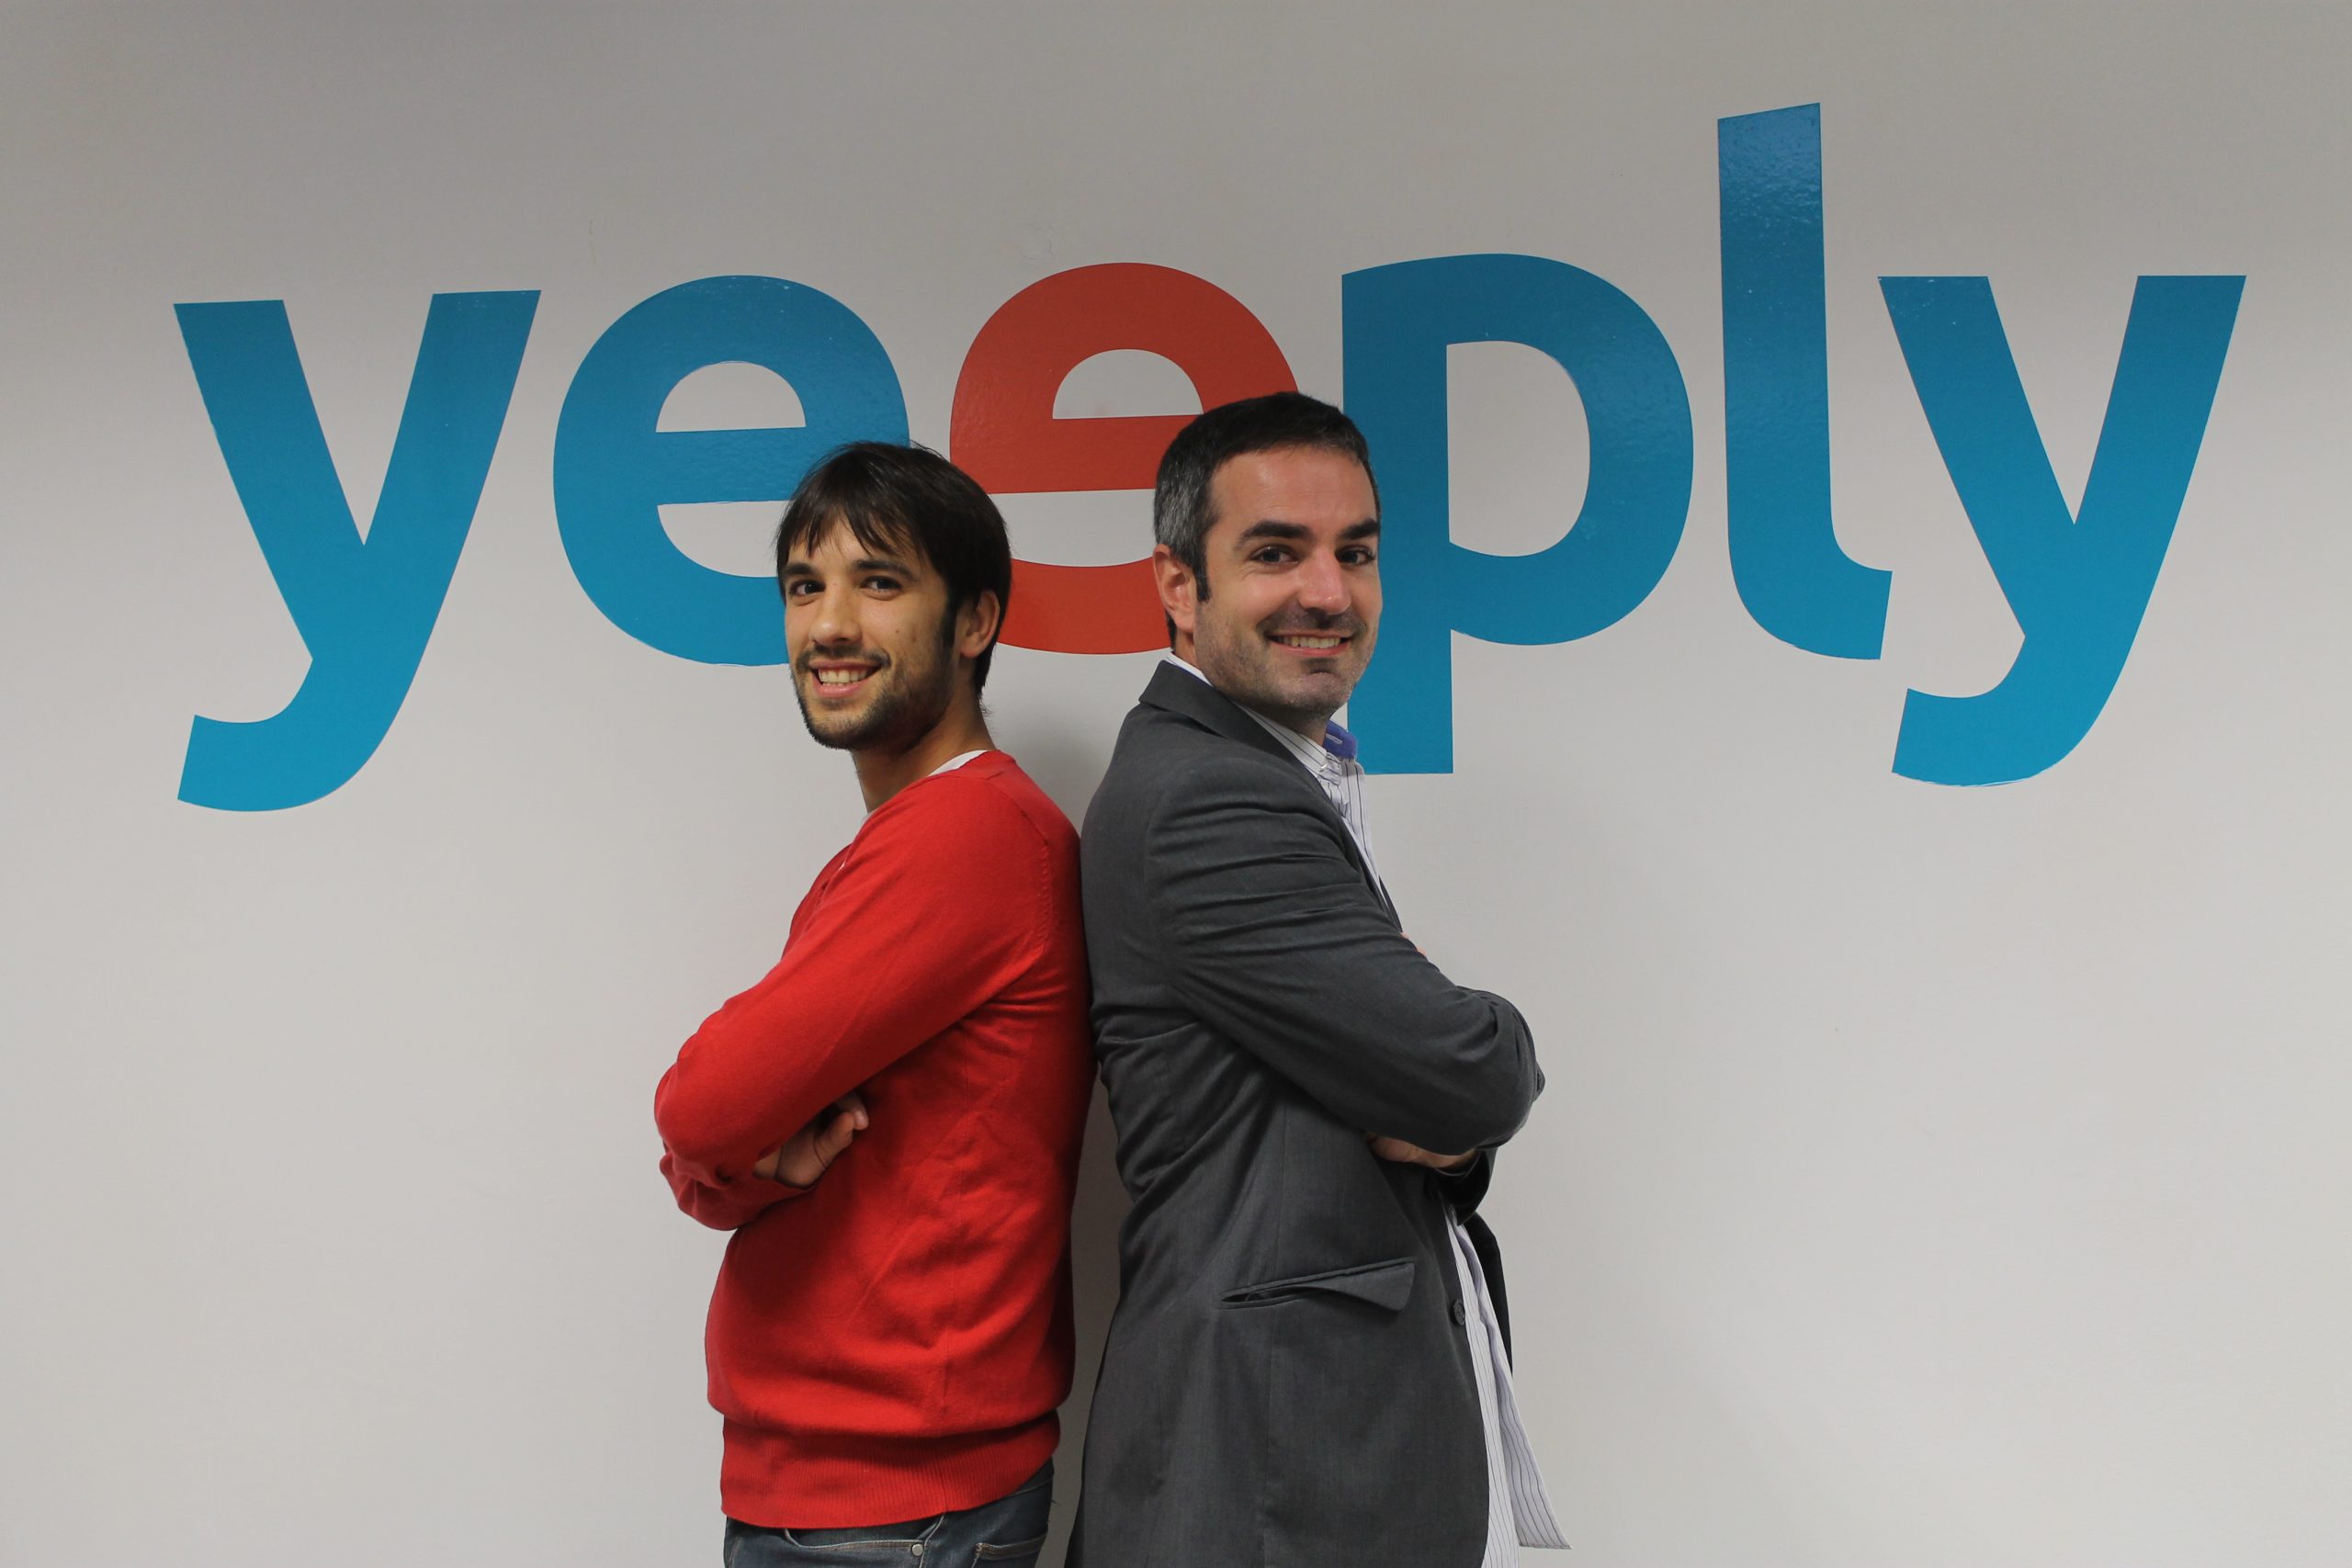 yeeply_founders.jpg